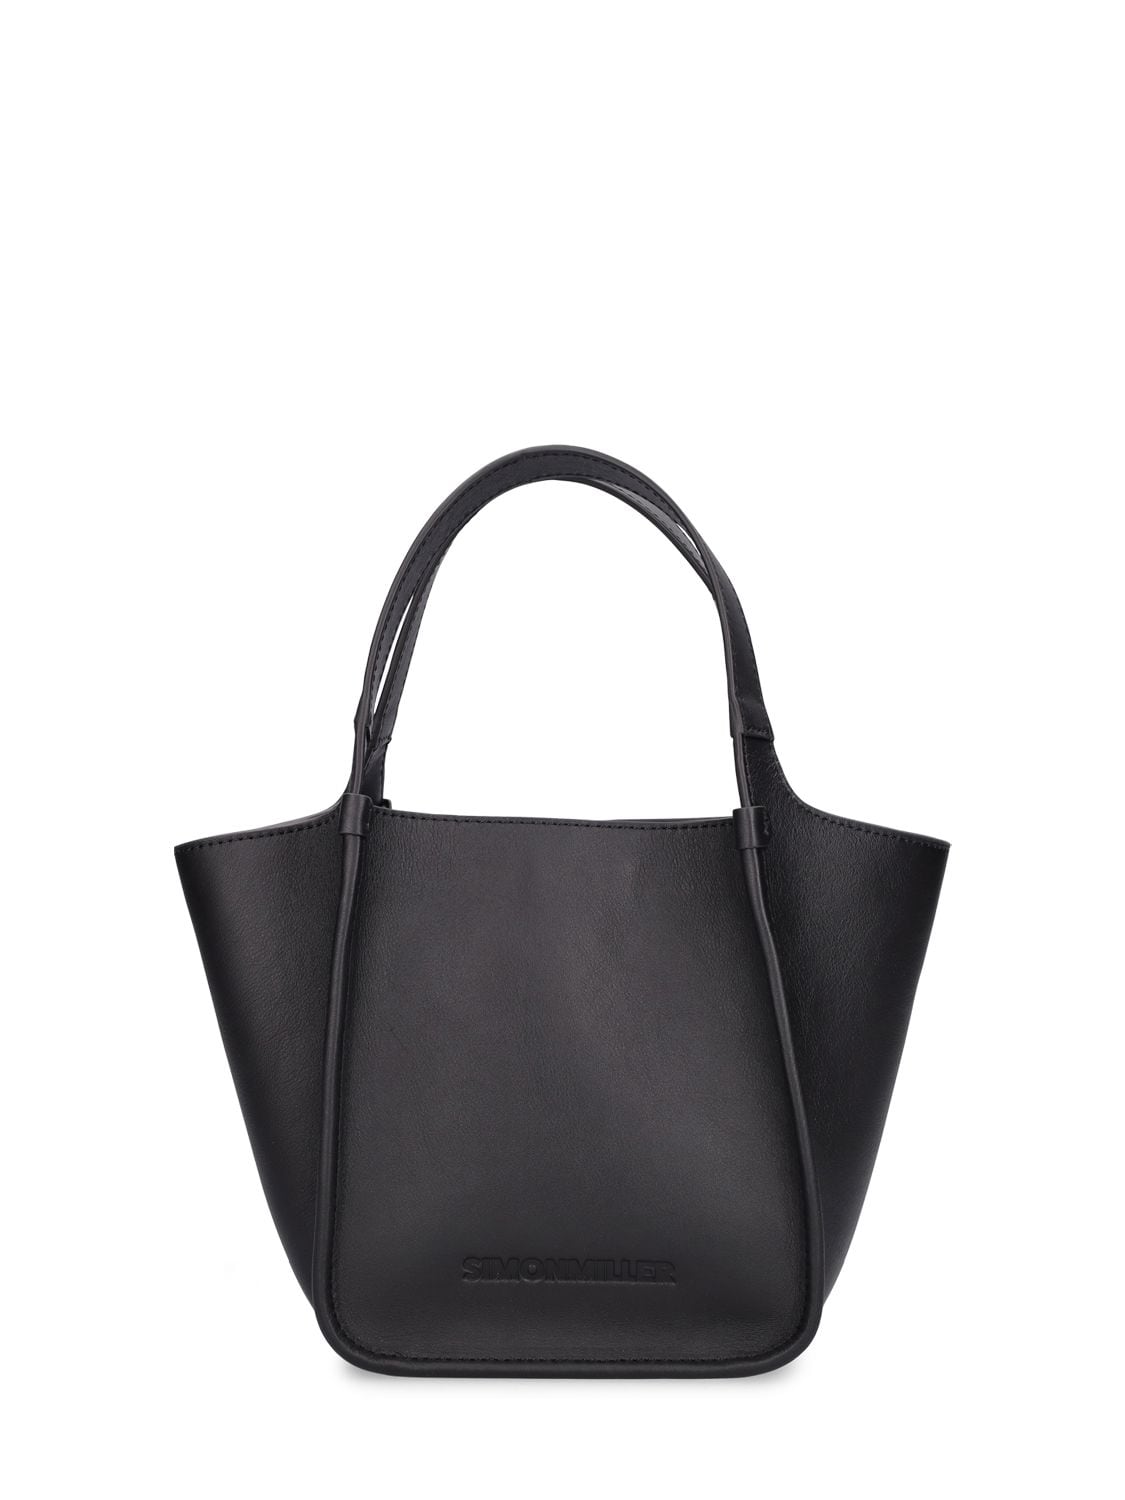 Simon Miller Canyon Leather Shoulder Bag In Black